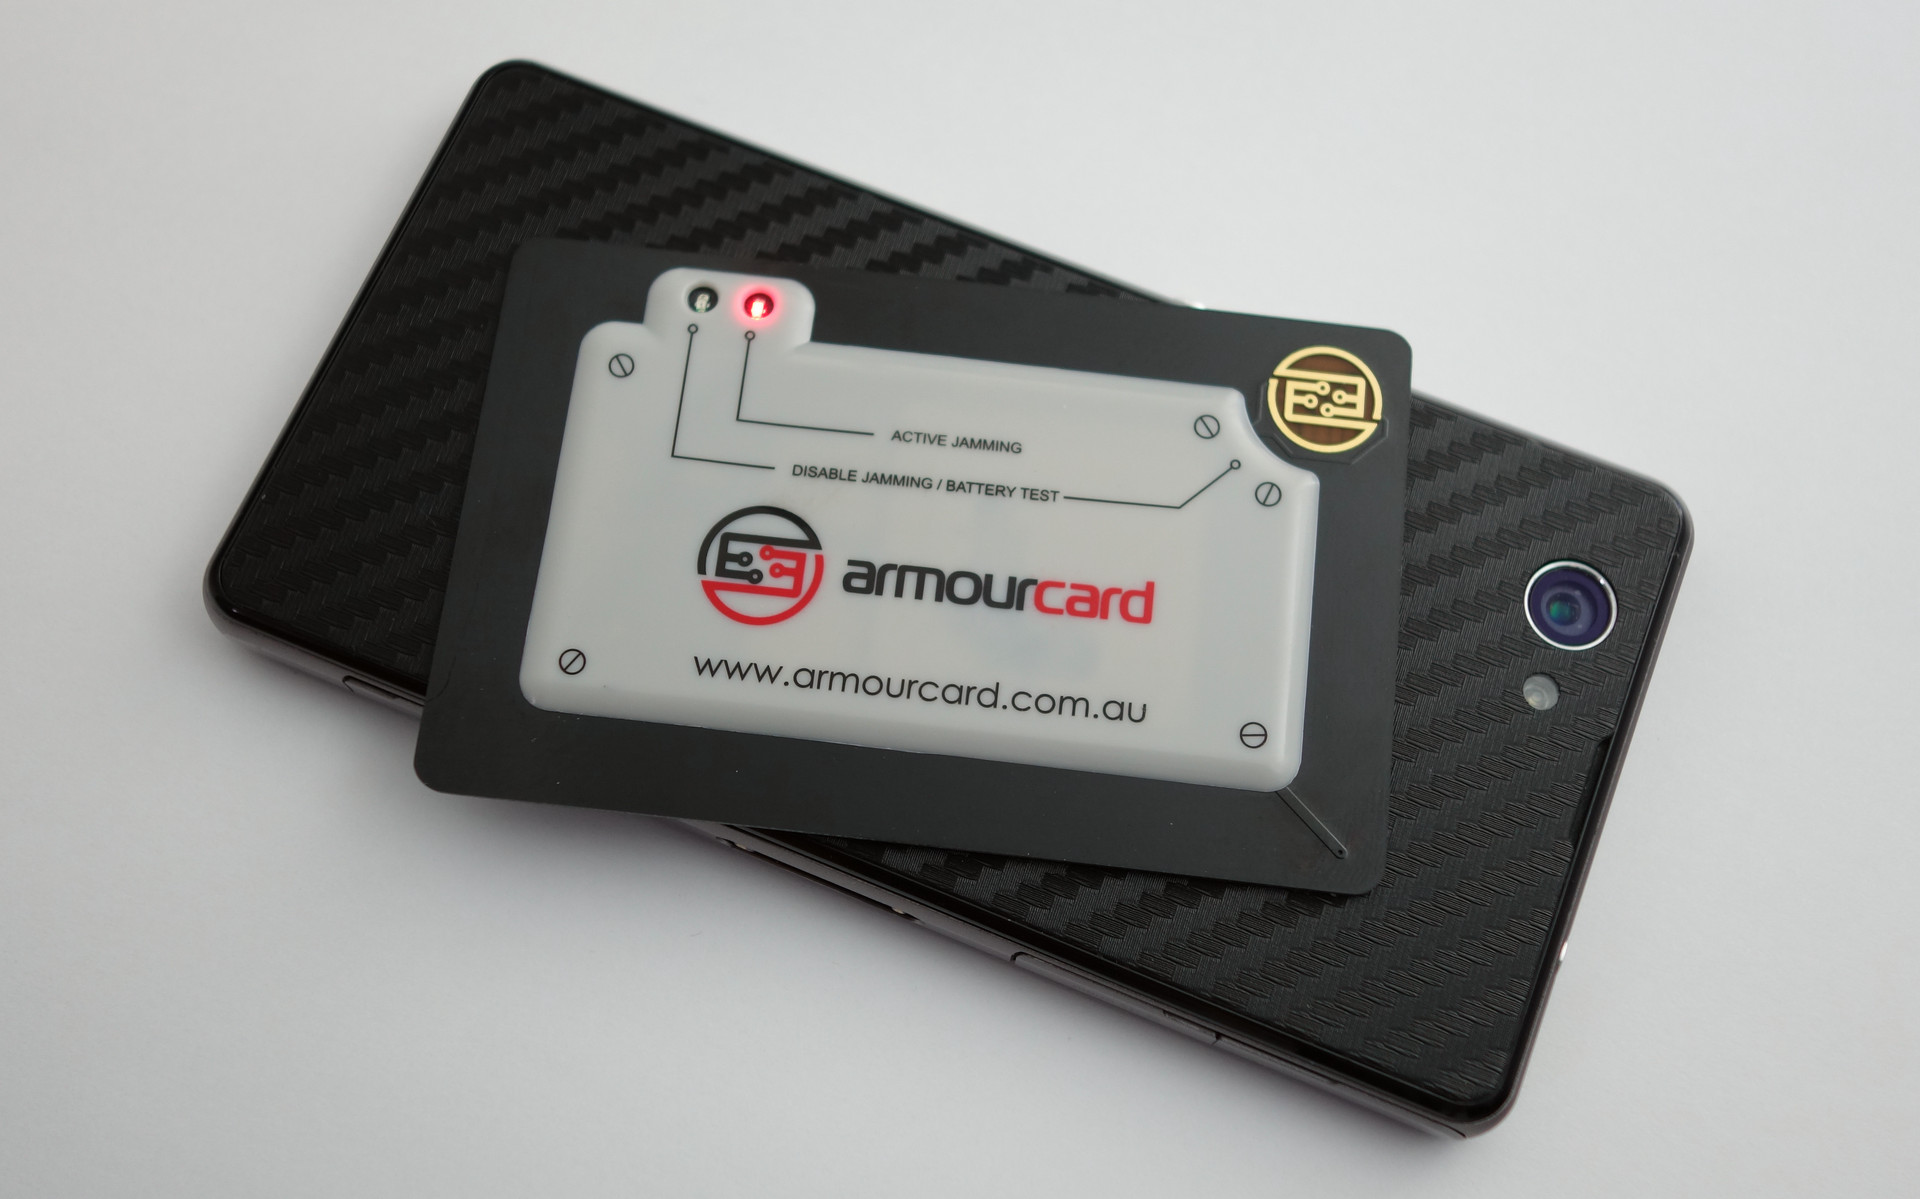 Armourcard near an NFC/RFID reader